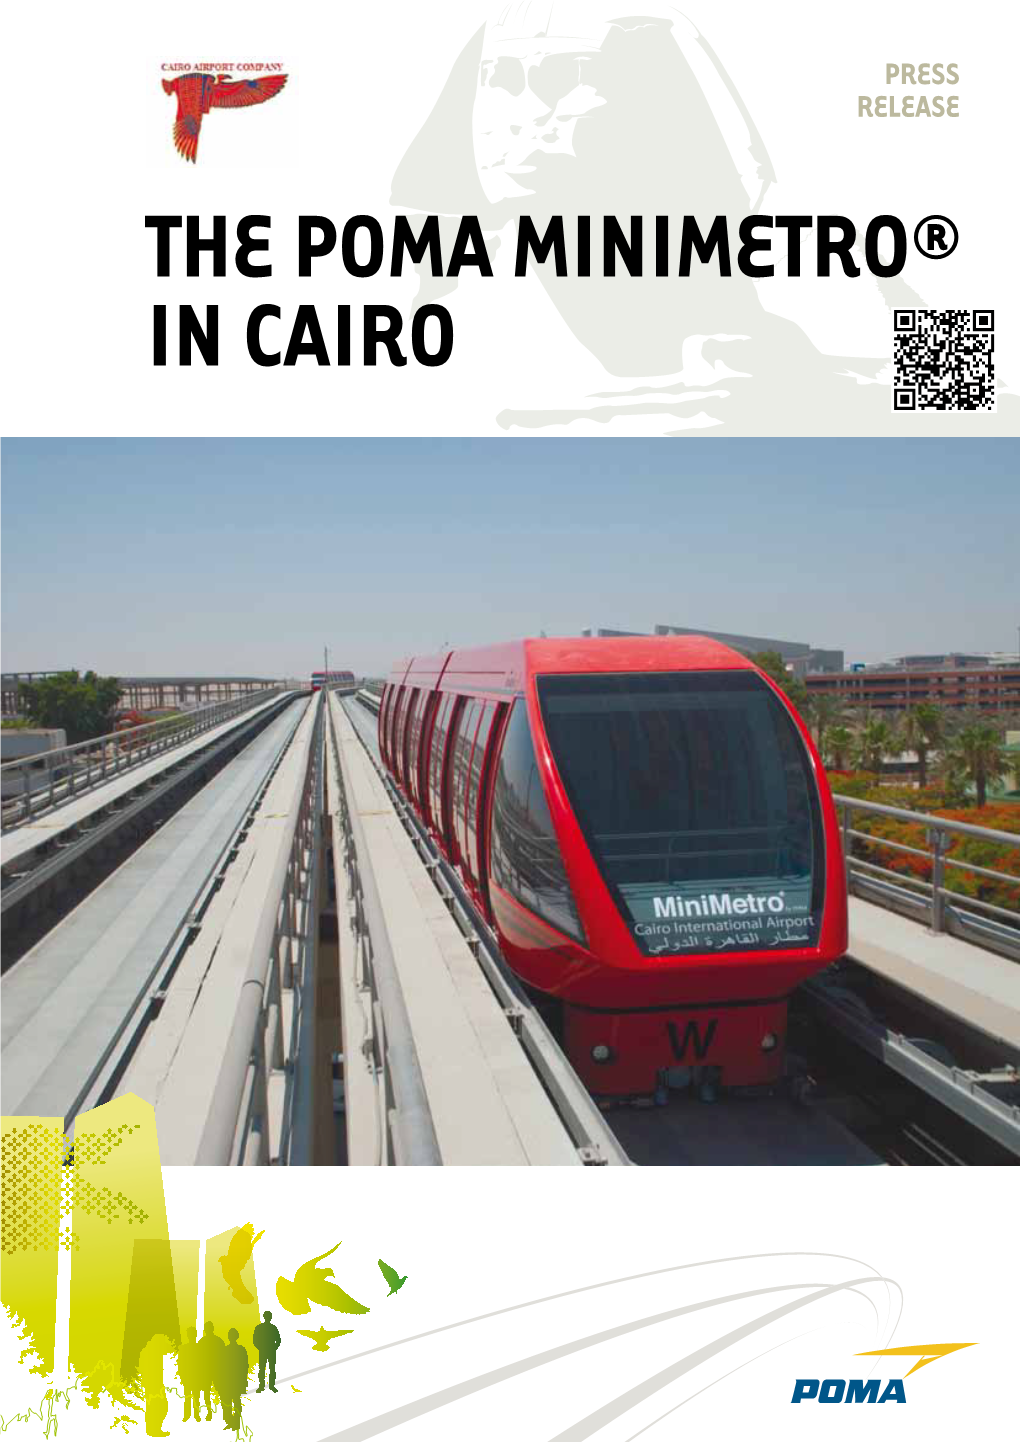 The POMA Minimetro® in Cairo Press Release - the POMA Minimetro® in Cairo 2|3